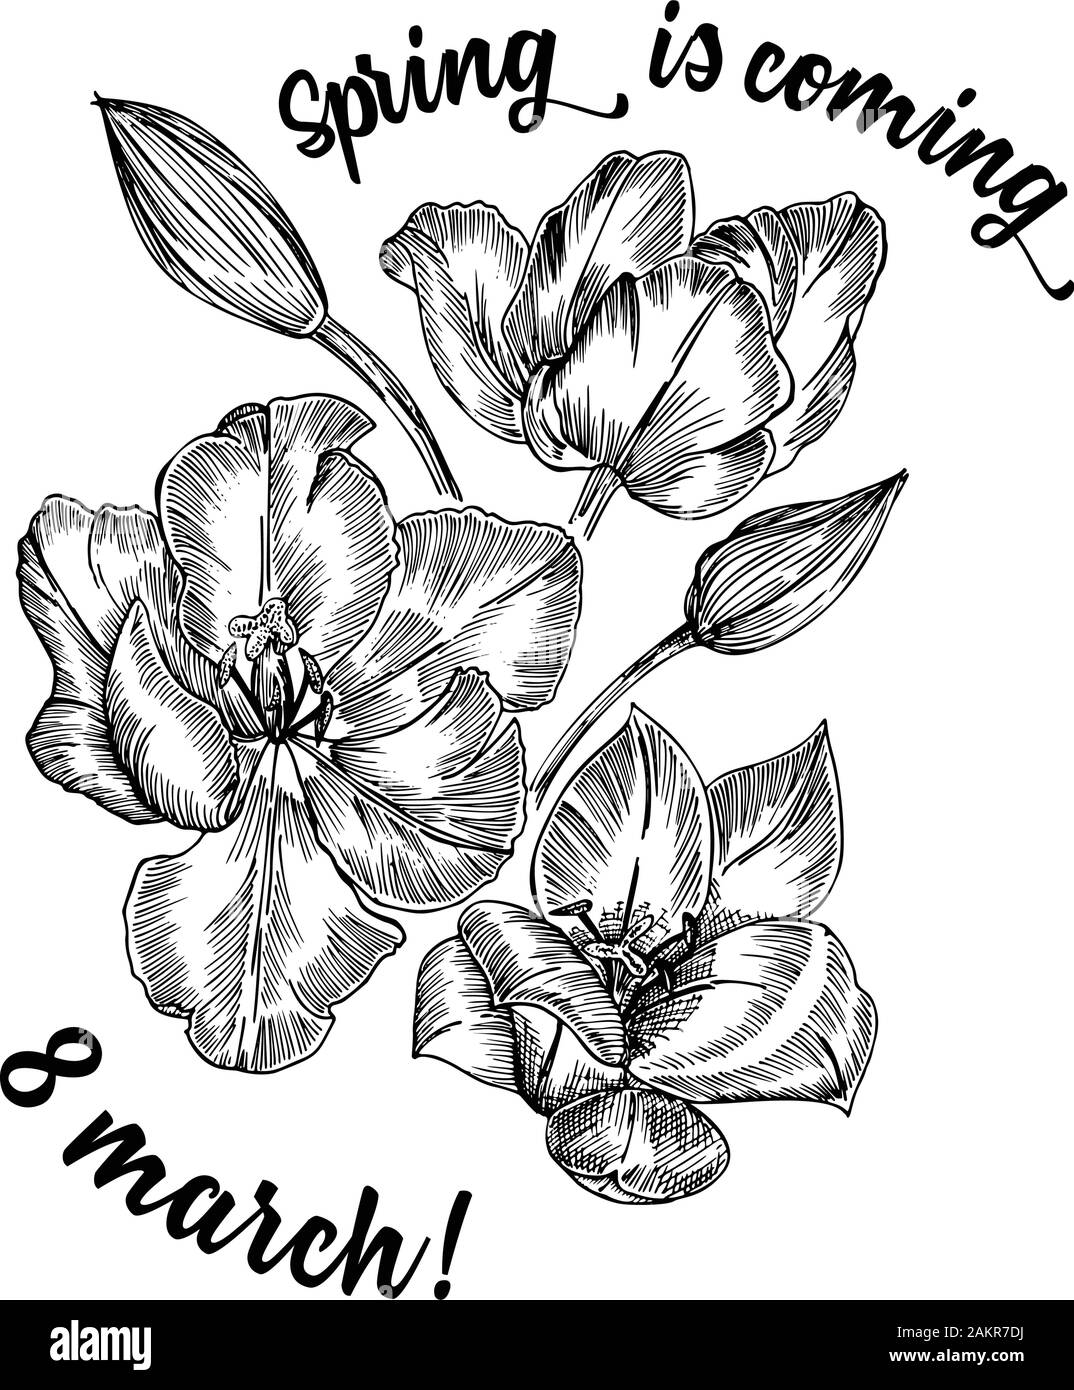 Fleurs de Printemps bouquet de tulipes sur fond blanc. Le style de dessin gravure en ligne. Nature botanique croquis réalistes pour motif floral de mariage Illustration de Vecteur